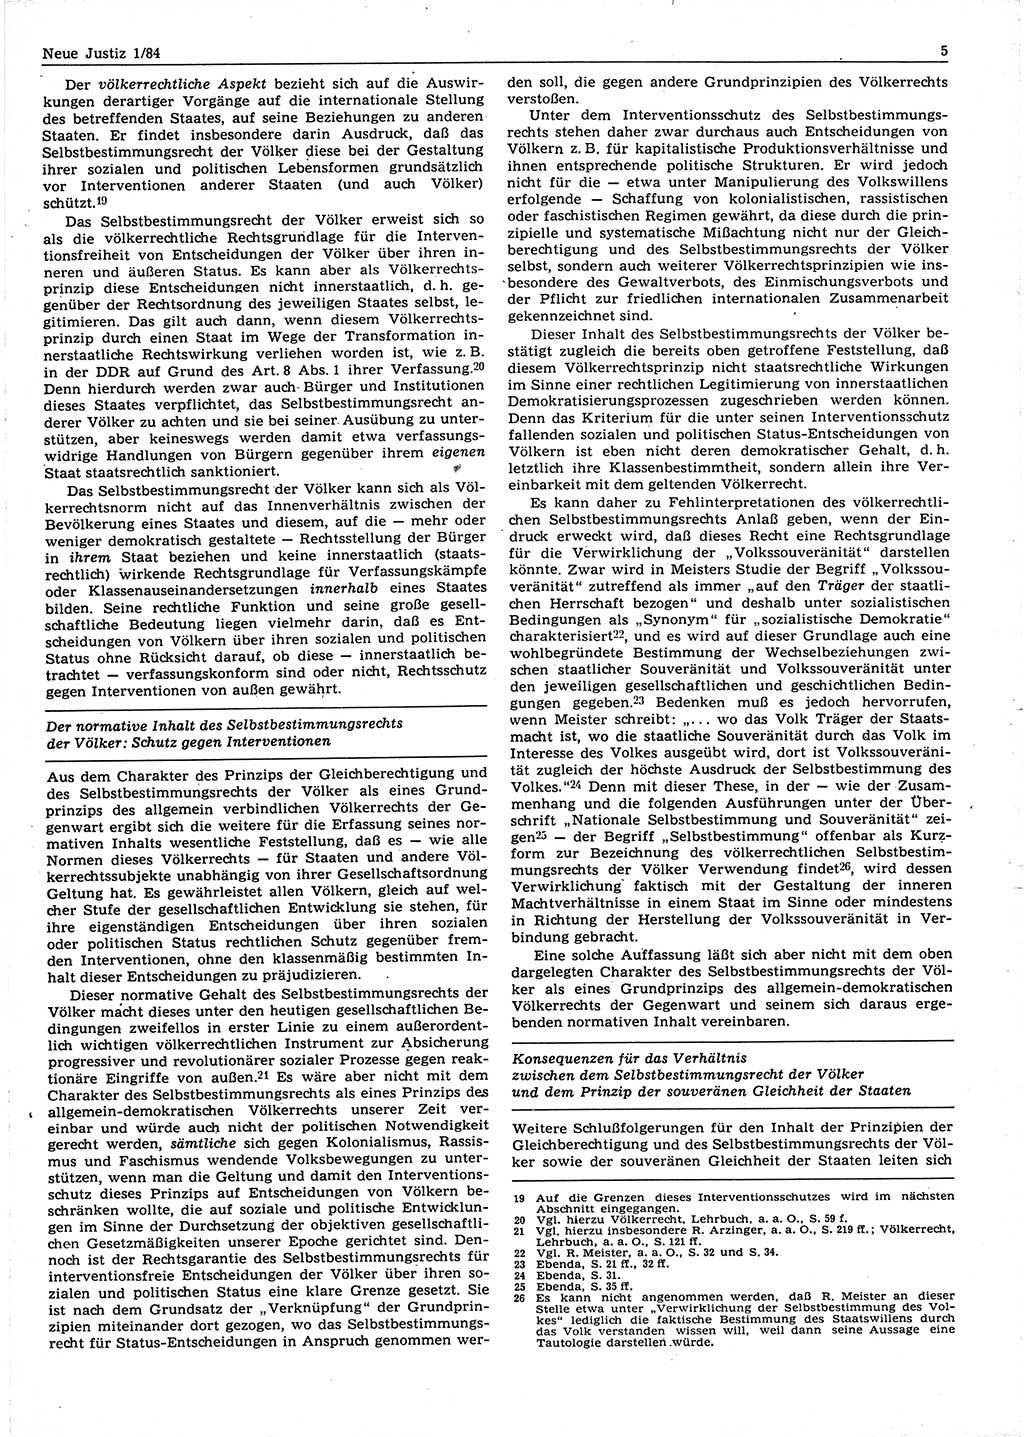 Neue Justiz (NJ), Zeitschrift für sozialistisches Recht und Gesetzlichkeit [Deutsche Demokratische Republik (DDR)], 38. Jahrgang 1984, Seite 5 (NJ DDR 1984, S. 5)